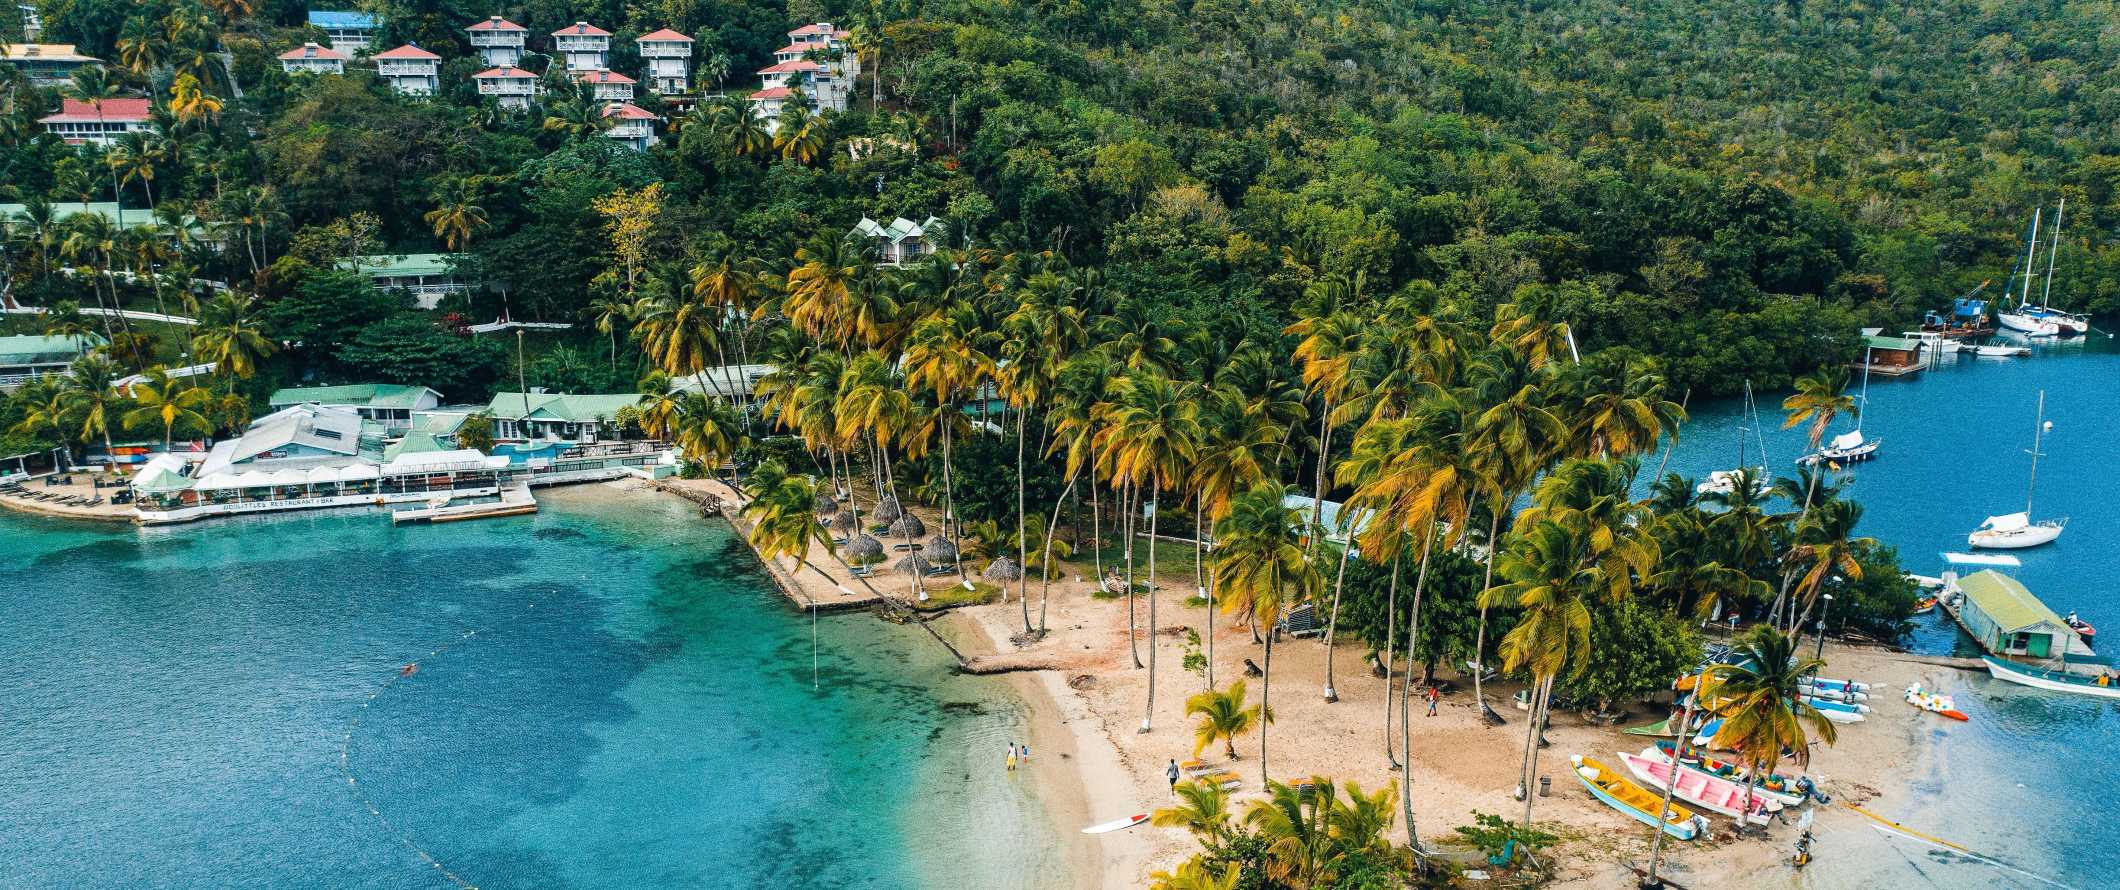 Vista do drone para uma pequena baía de turquesa com barcos ao longo da praia estabelecidos por palmeiras e casas empoleiradas nas magníficas encostas das colinas de Saint-Lucia